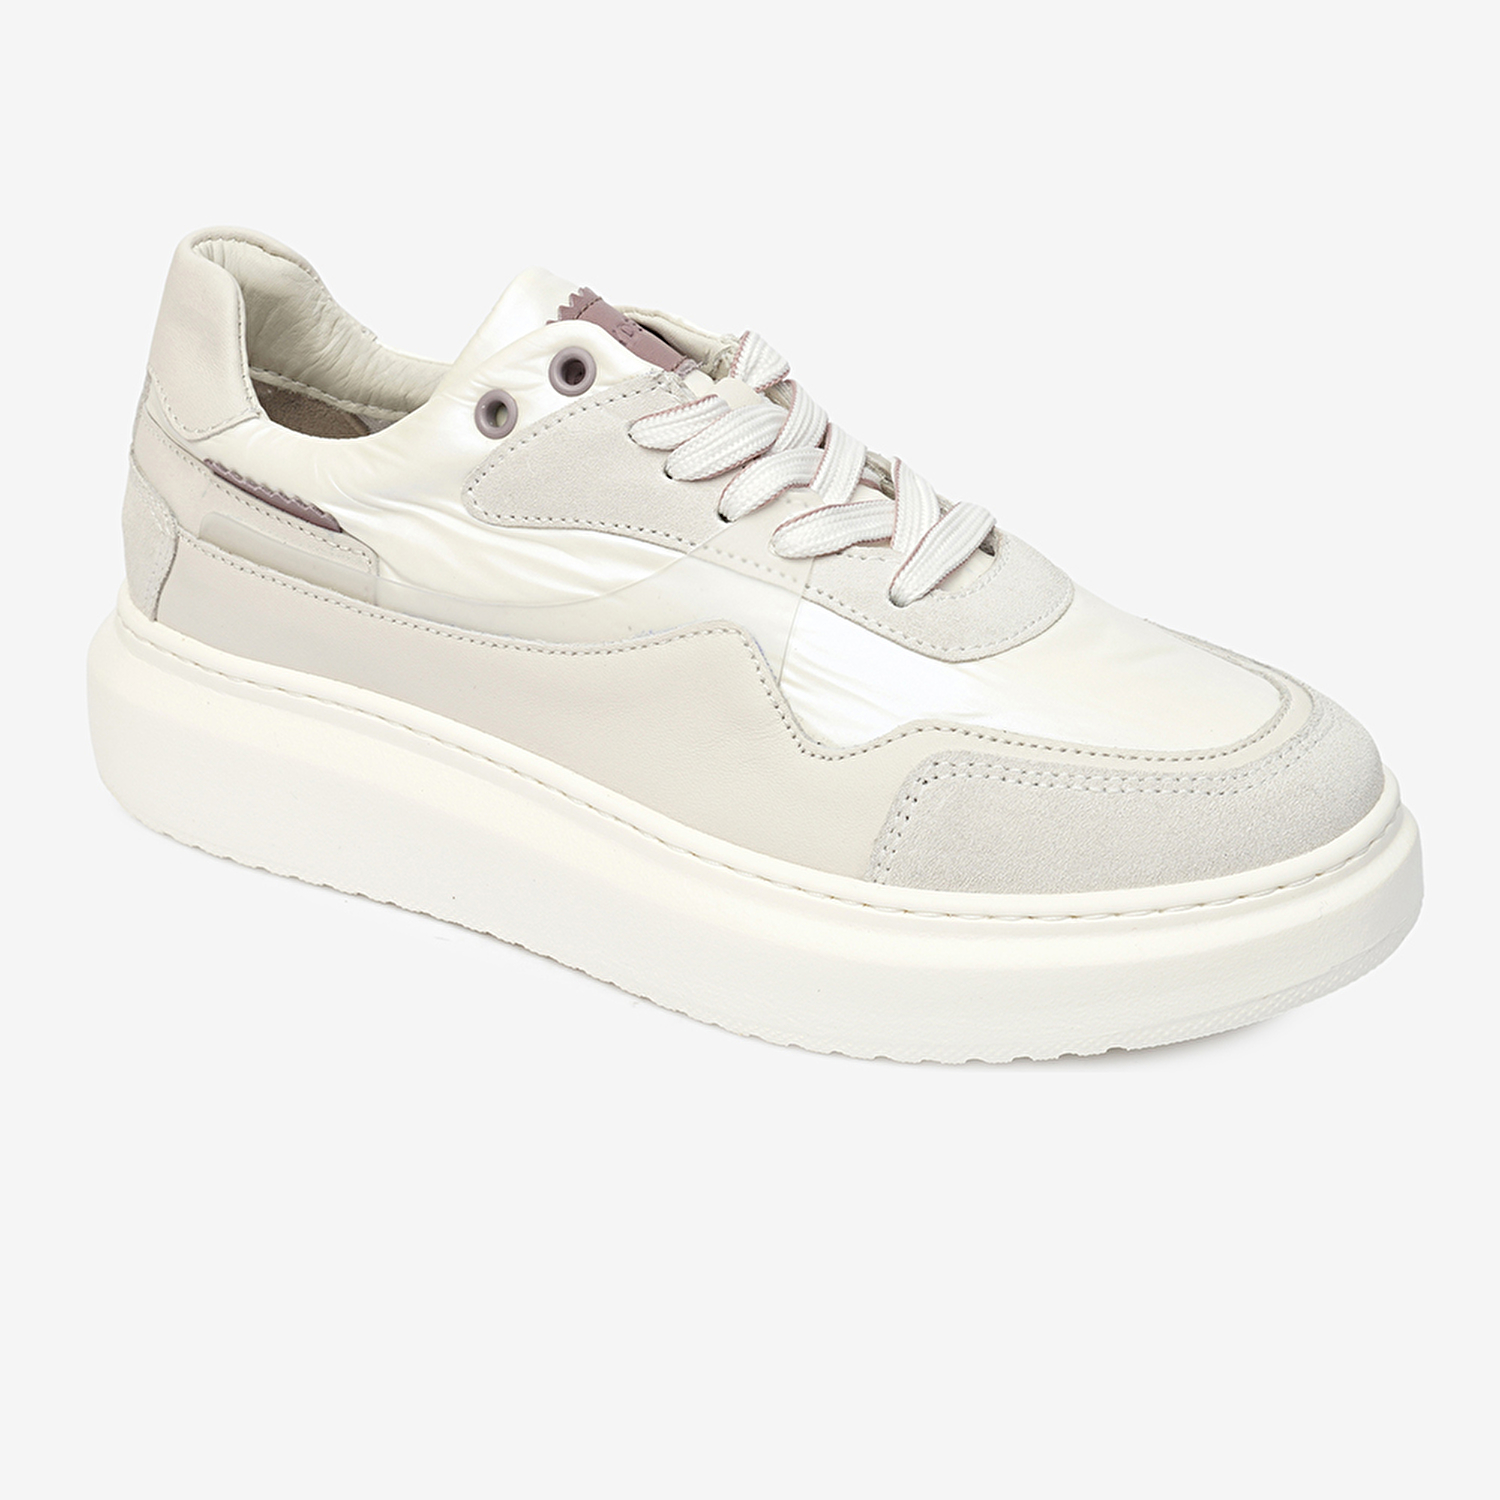 Kadın Beyaz Hakiki Deri Sneaker Ayakkabı 4Y2SA33271-1